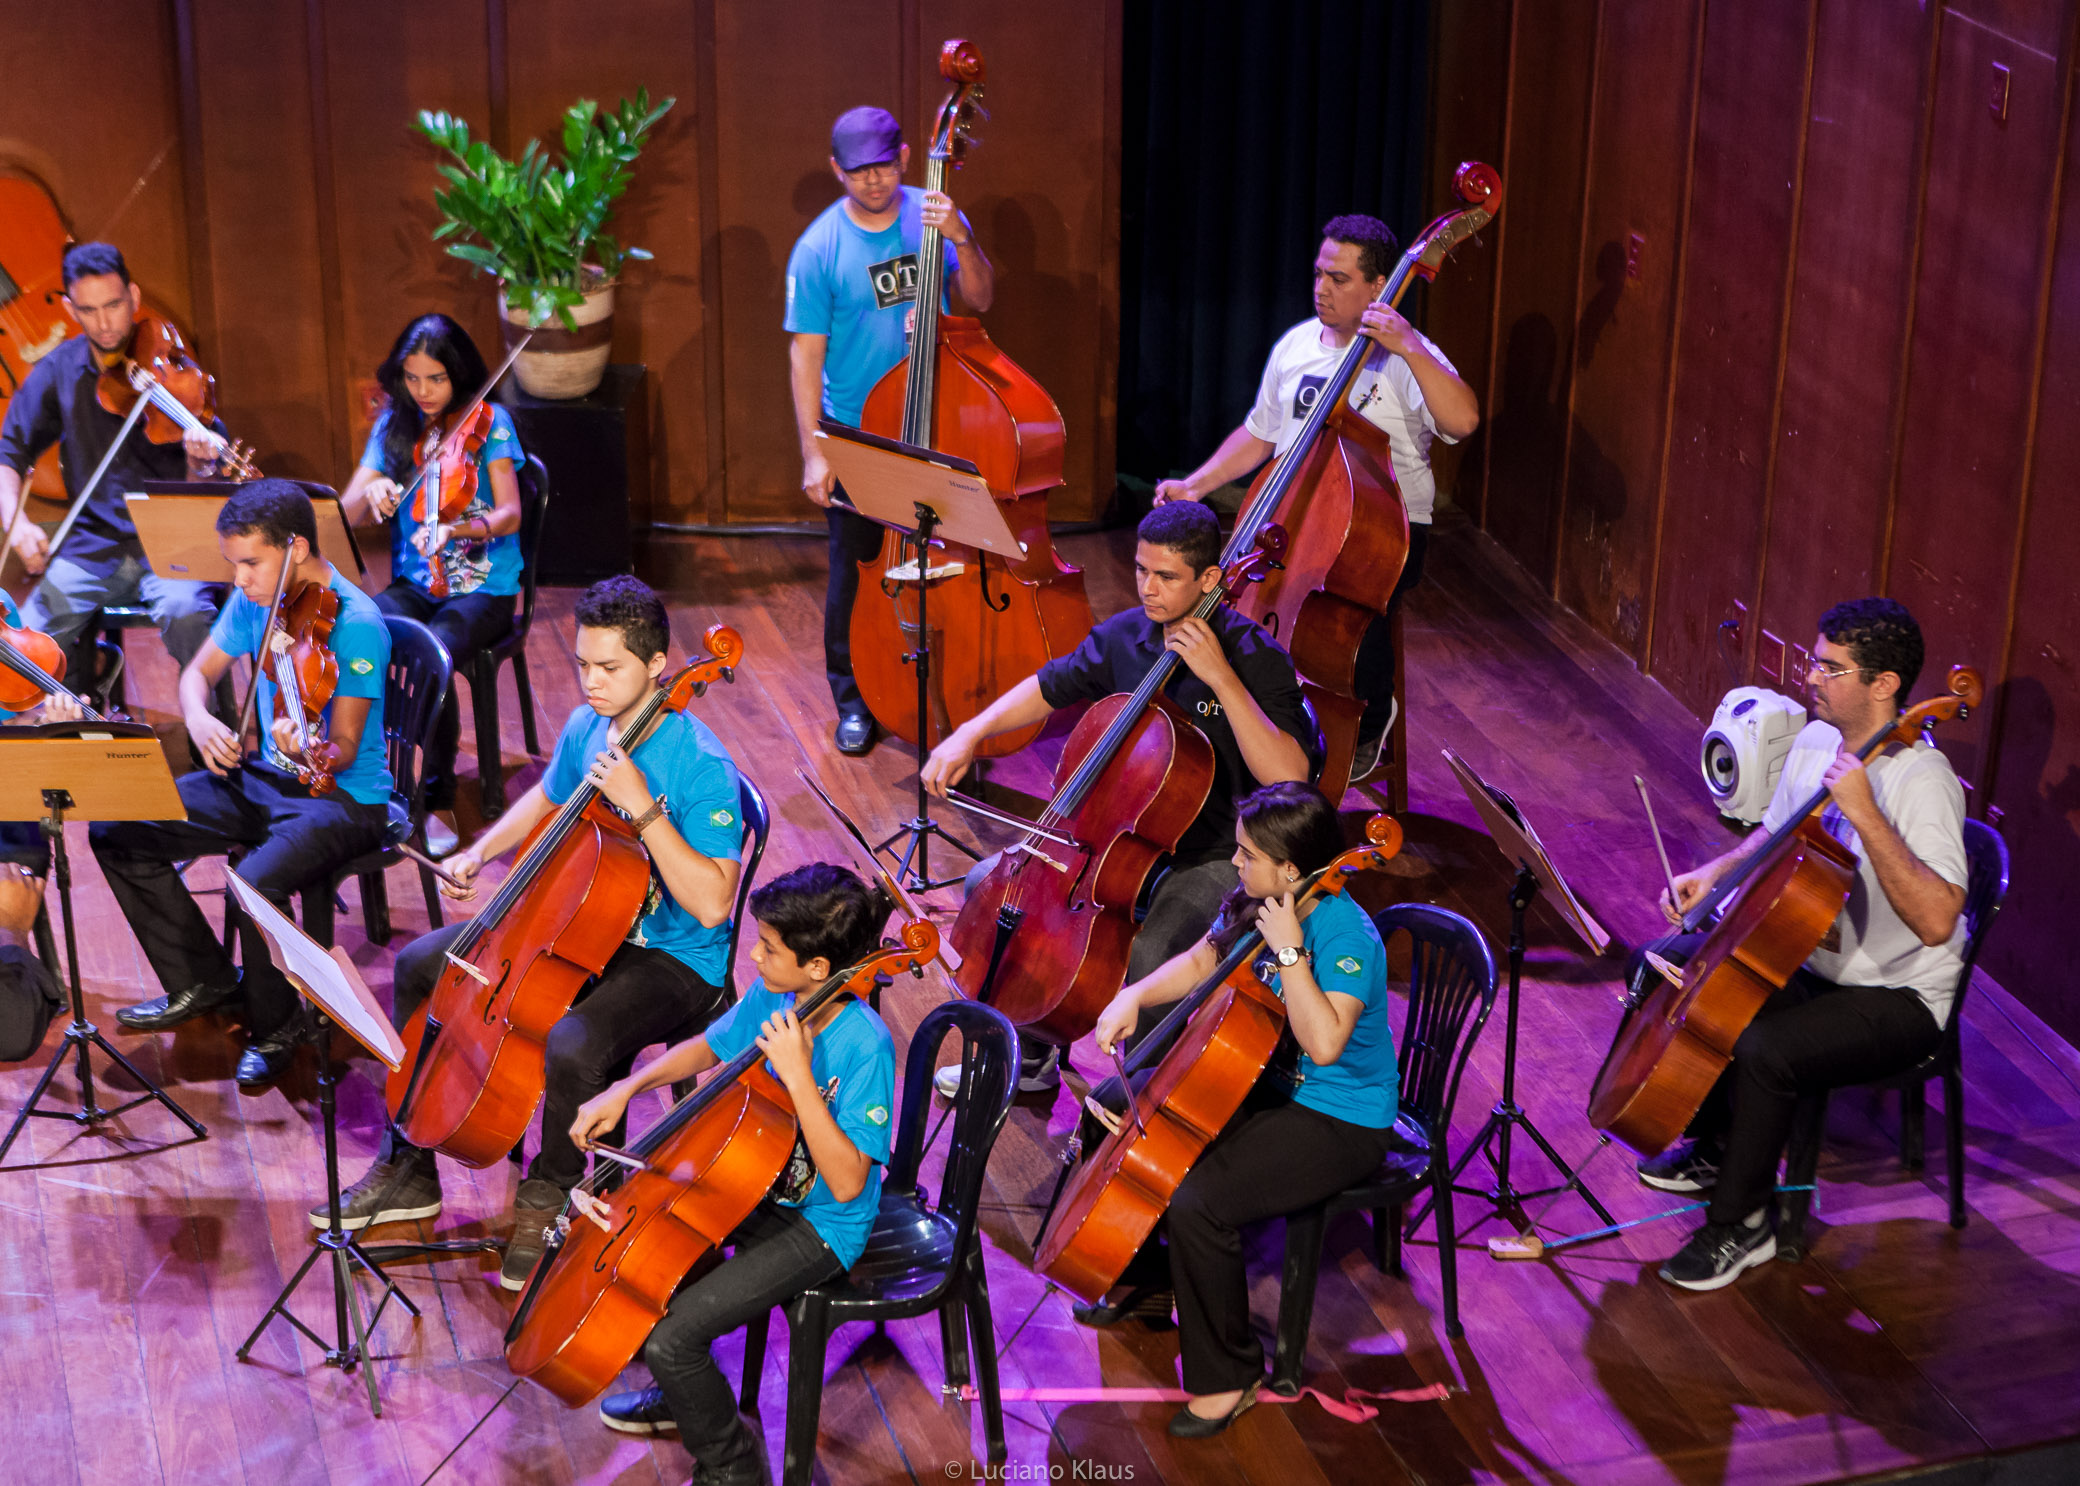 A Orquestra Escola de Teresina cumpre uma função importante de fomento cultural em Teresina